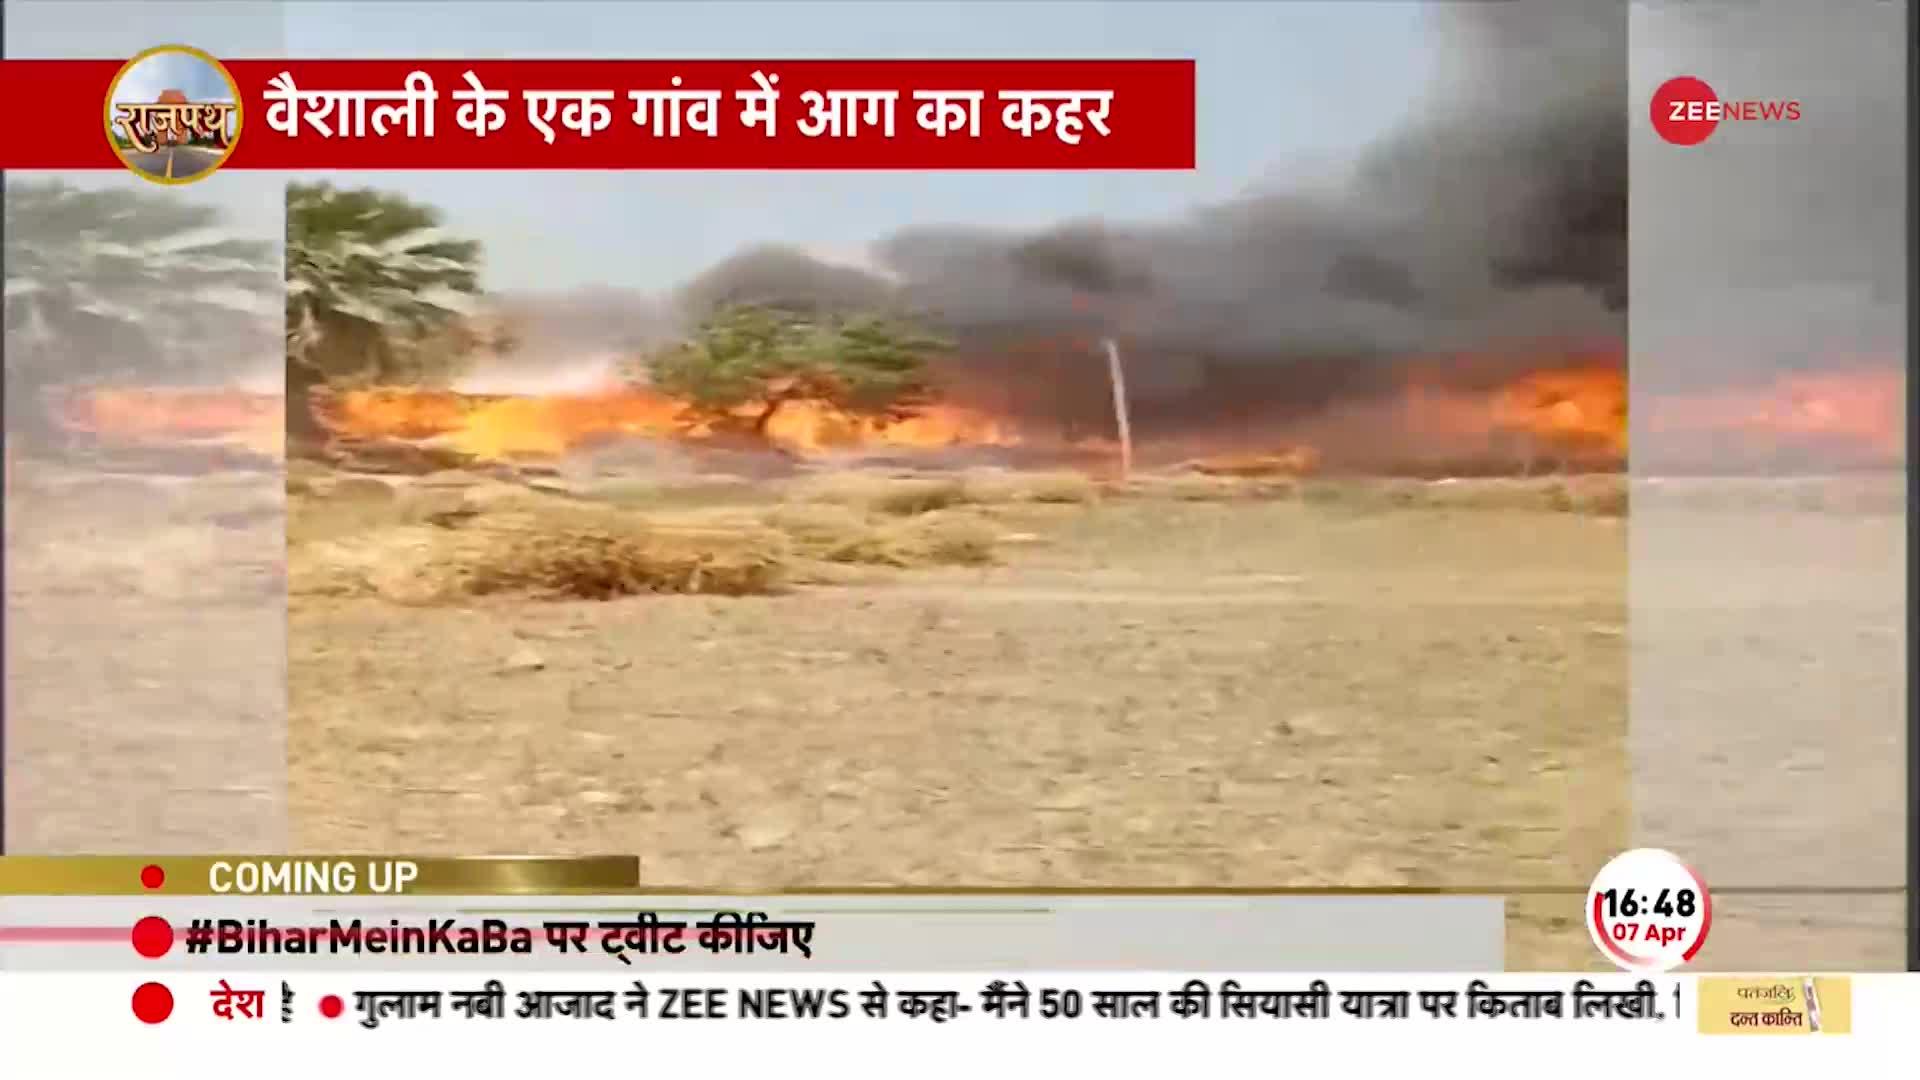 Bihar News: वैशाली के एक गांव में आग का तांडव, खेत से सटी झुग्गियों में लगी आग